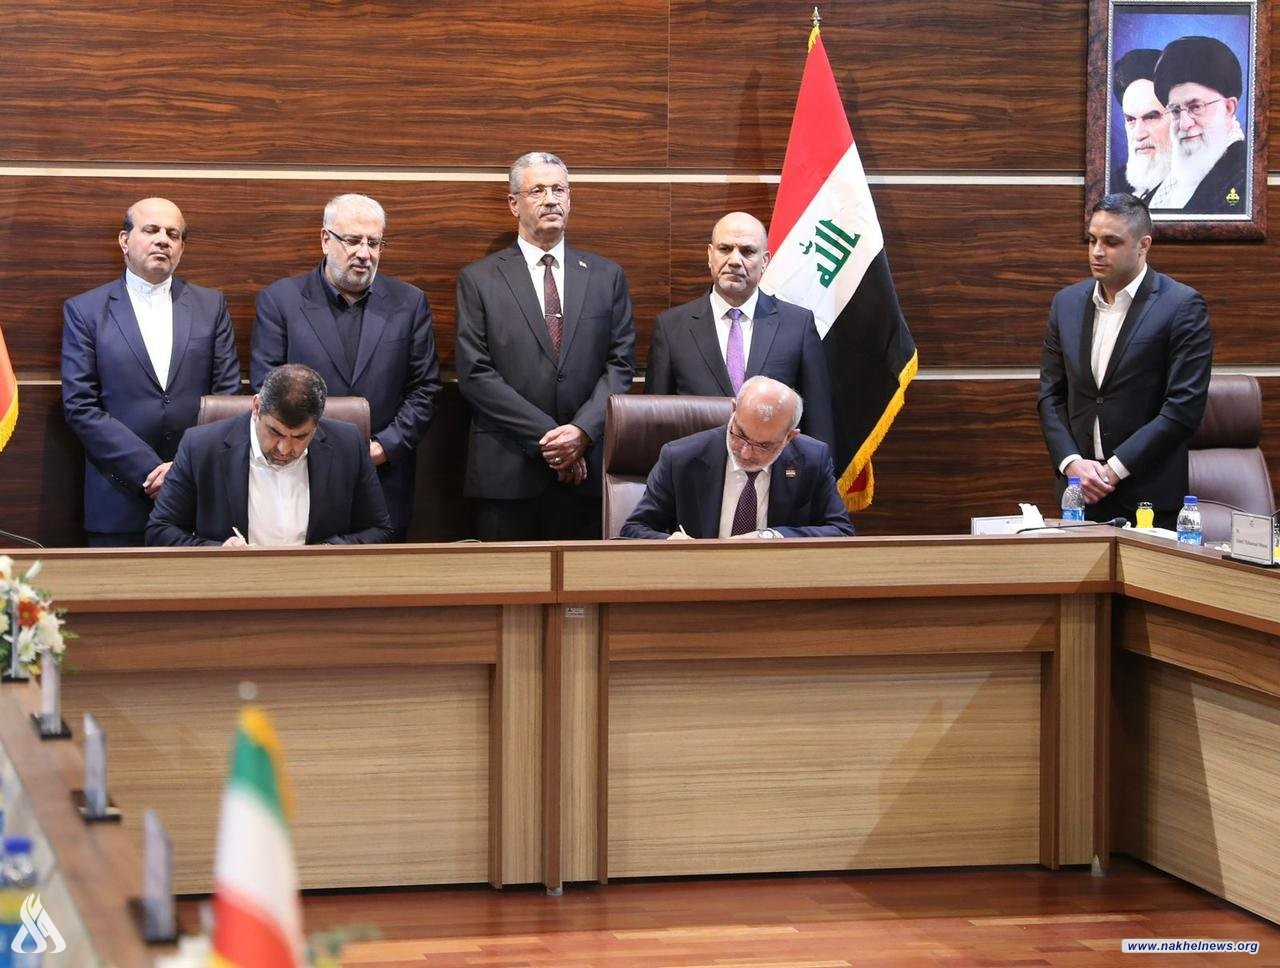  العراق وإيران يتفقان على تشكيل لجان مشتركة لتطوير قطاع النفط والطاقة